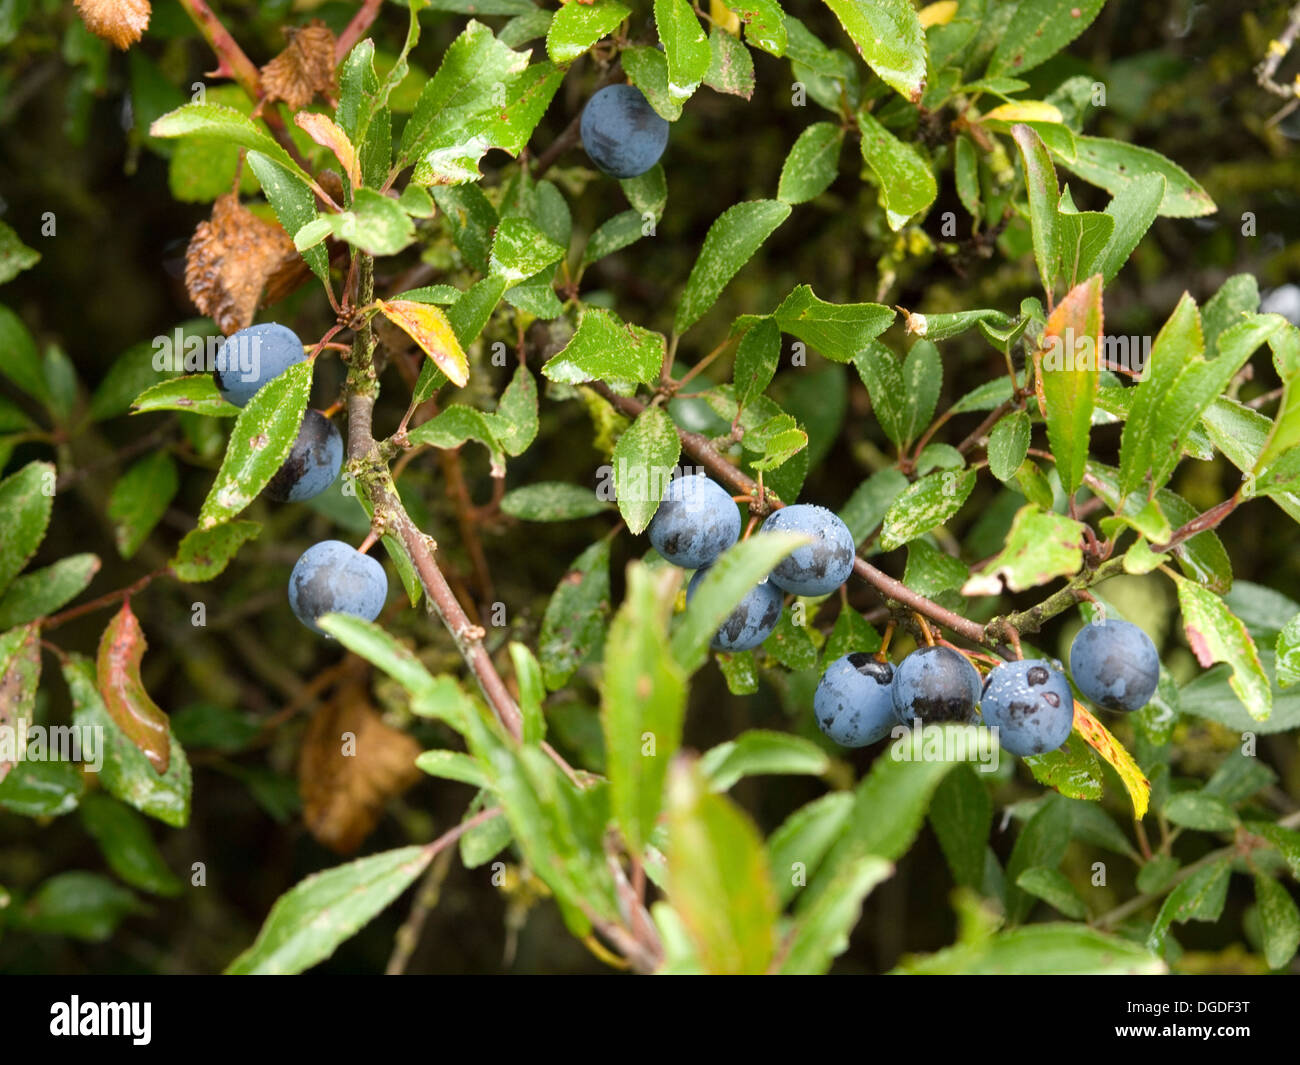 sloe berries on blackthorn tree Stock Photo